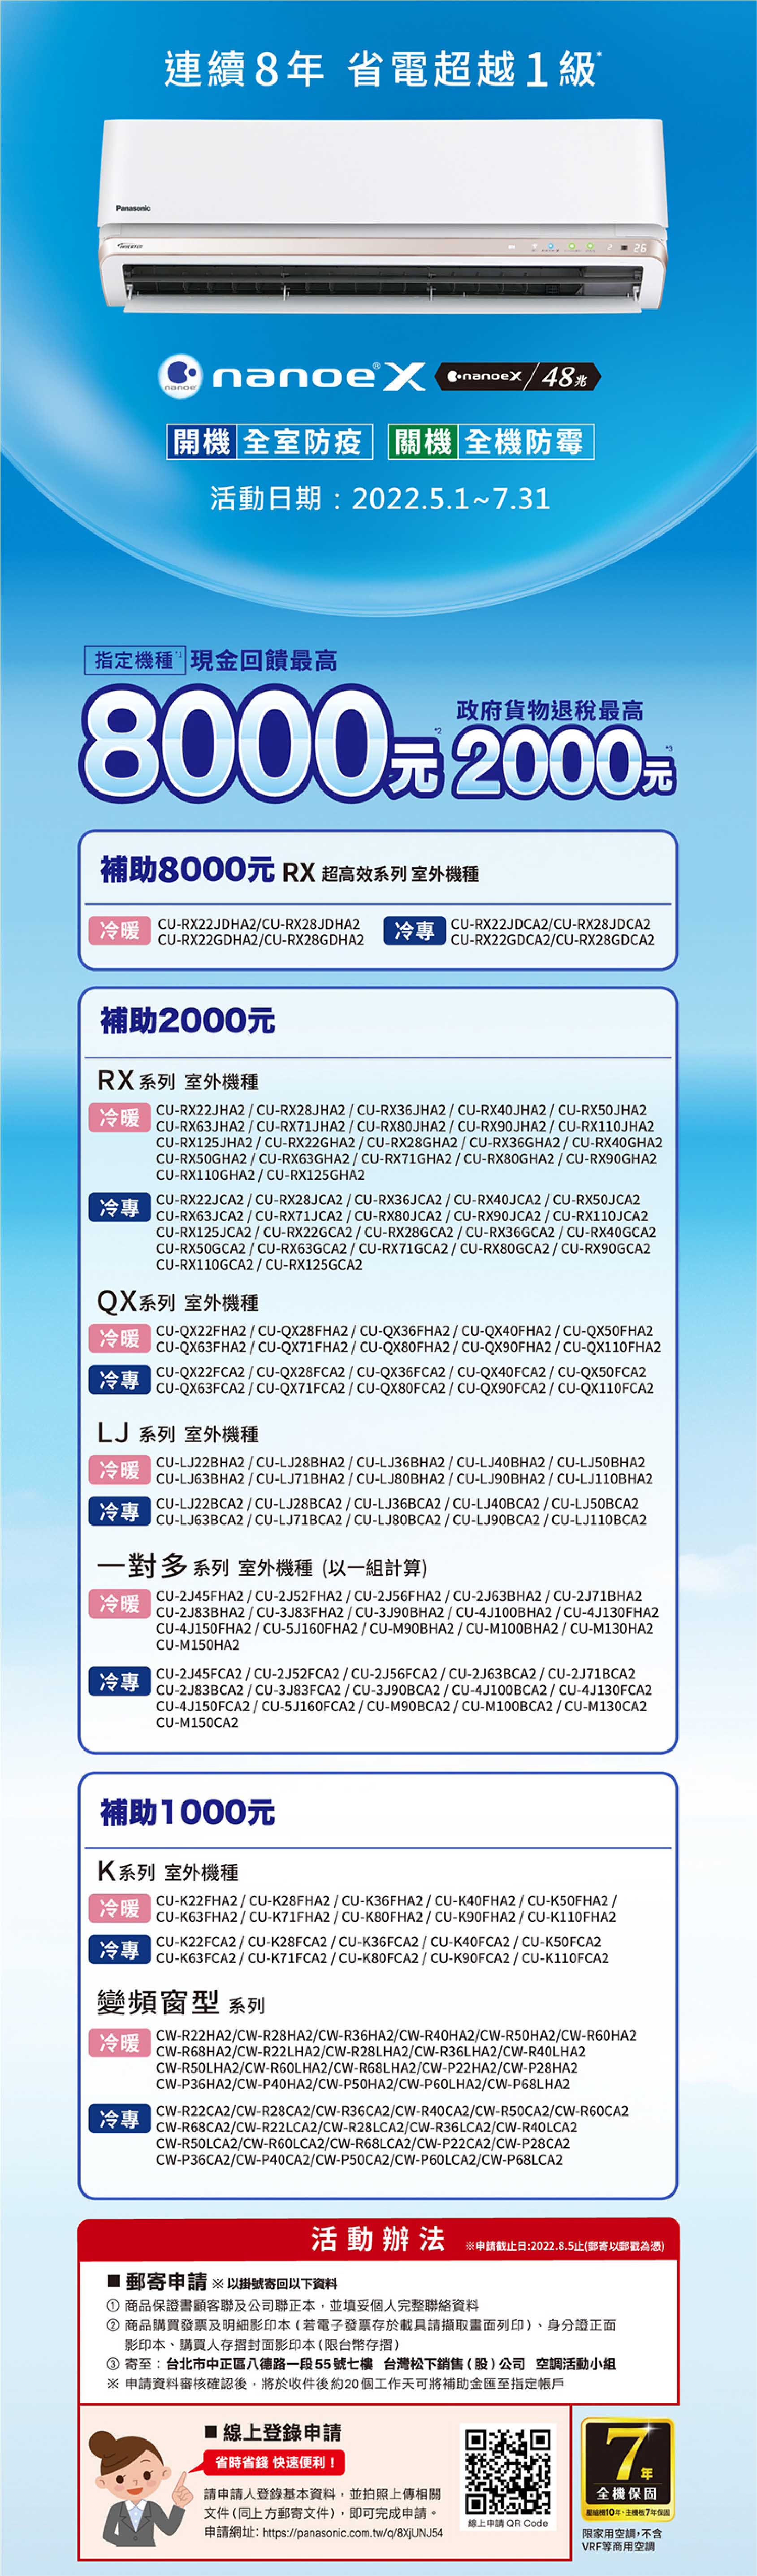 【活動快訊】2022年Panasonic國際牌空調夏季原廠現金補助最高$2000!!! 易弘冷氣